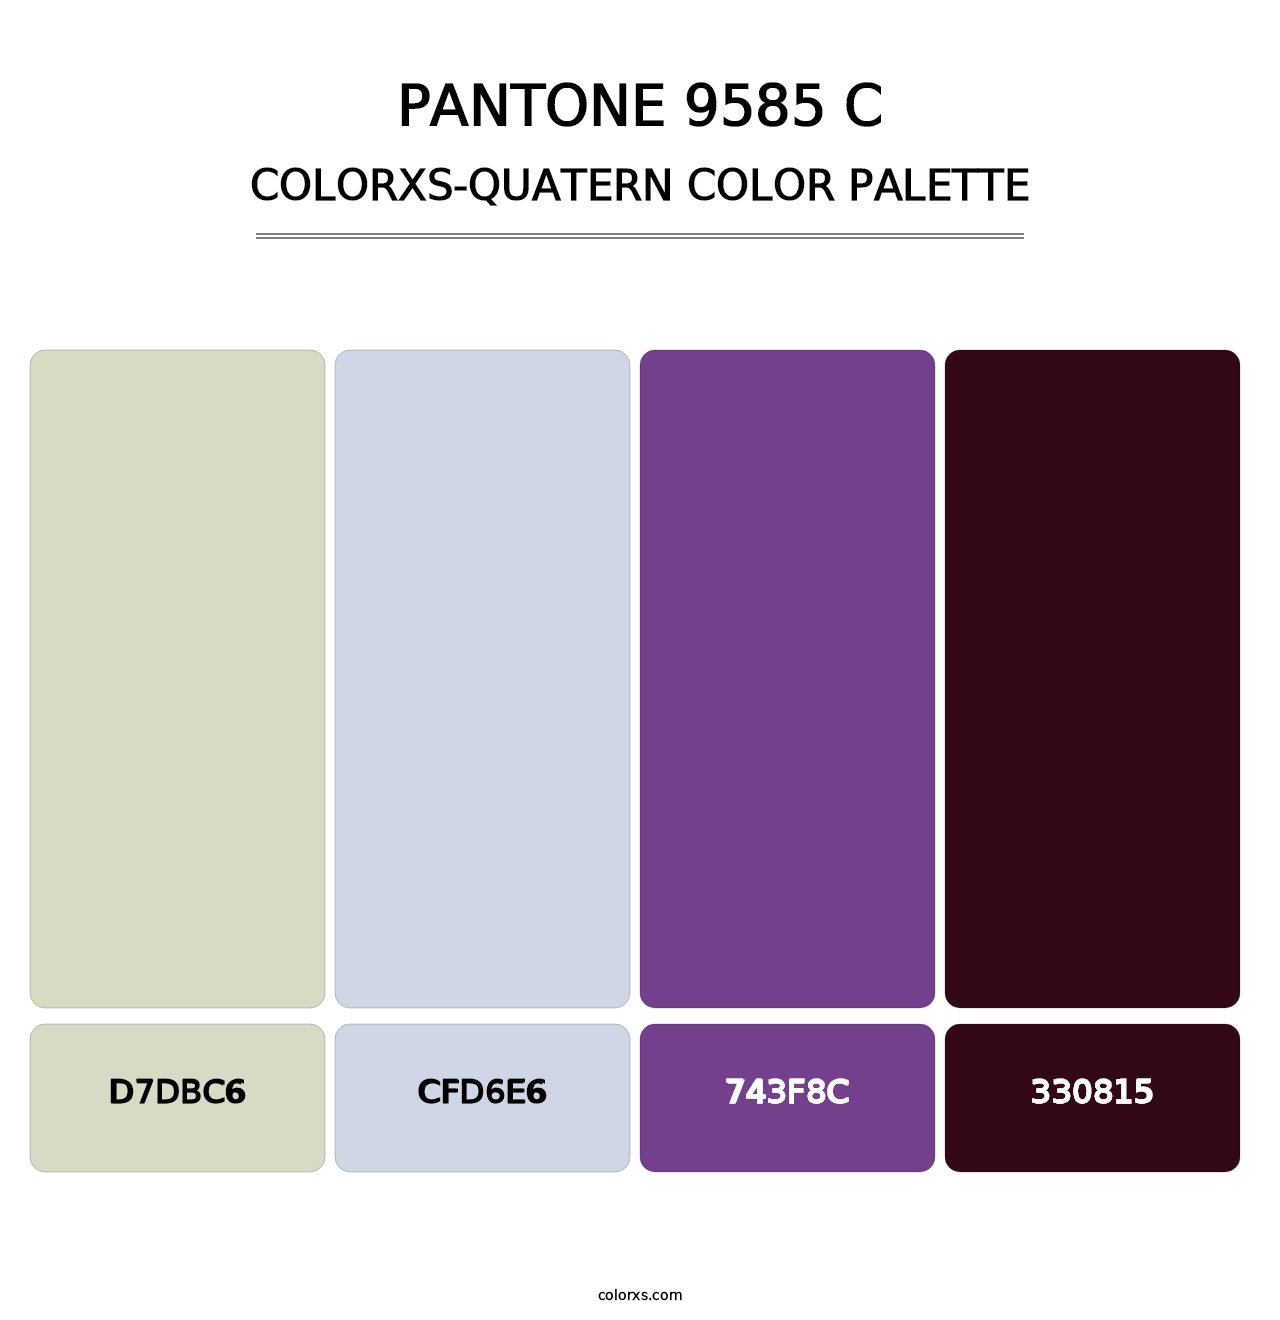 PANTONE 9585 C - Colorxs Quatern Palette